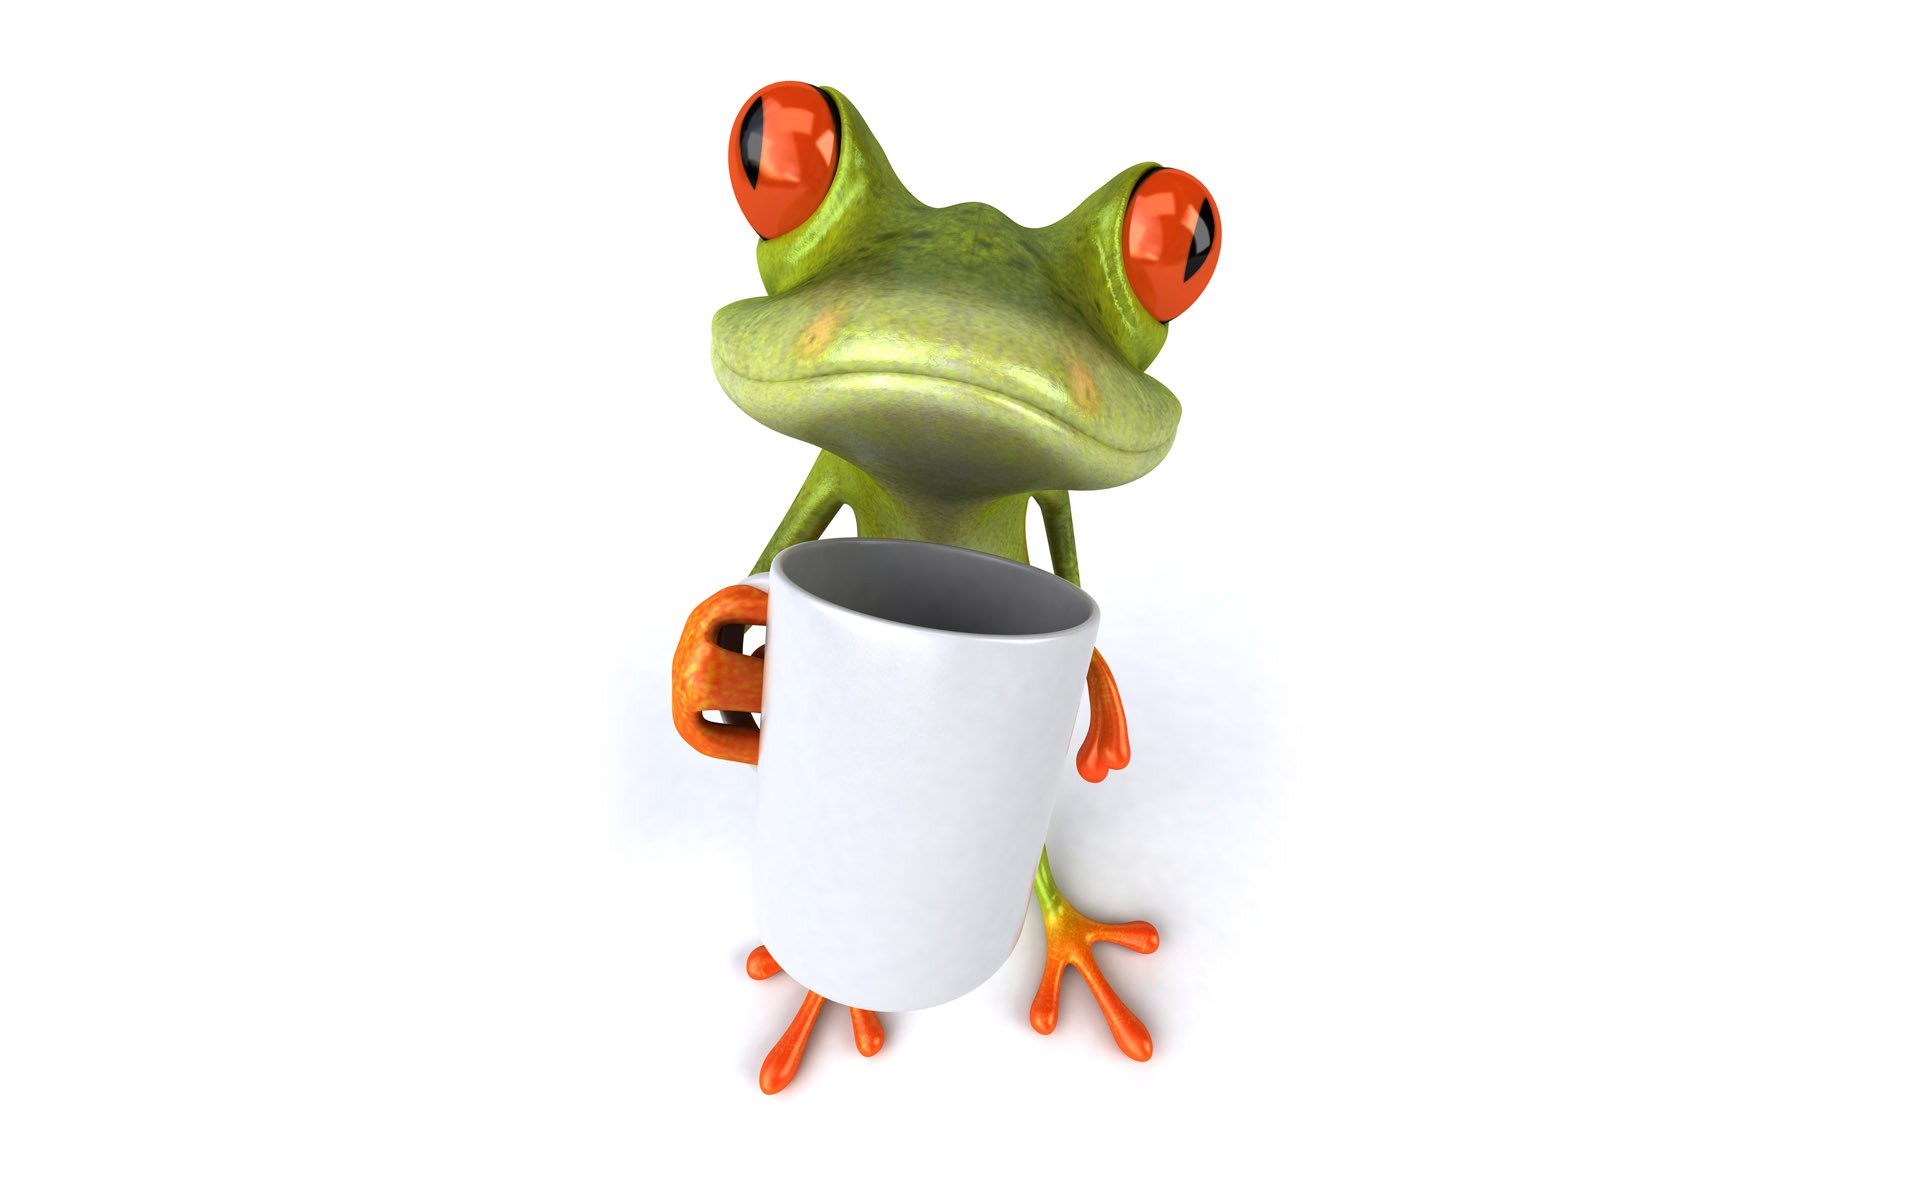  Cartoon  Frog  Desktop Wallpaper  WallpaperSafari